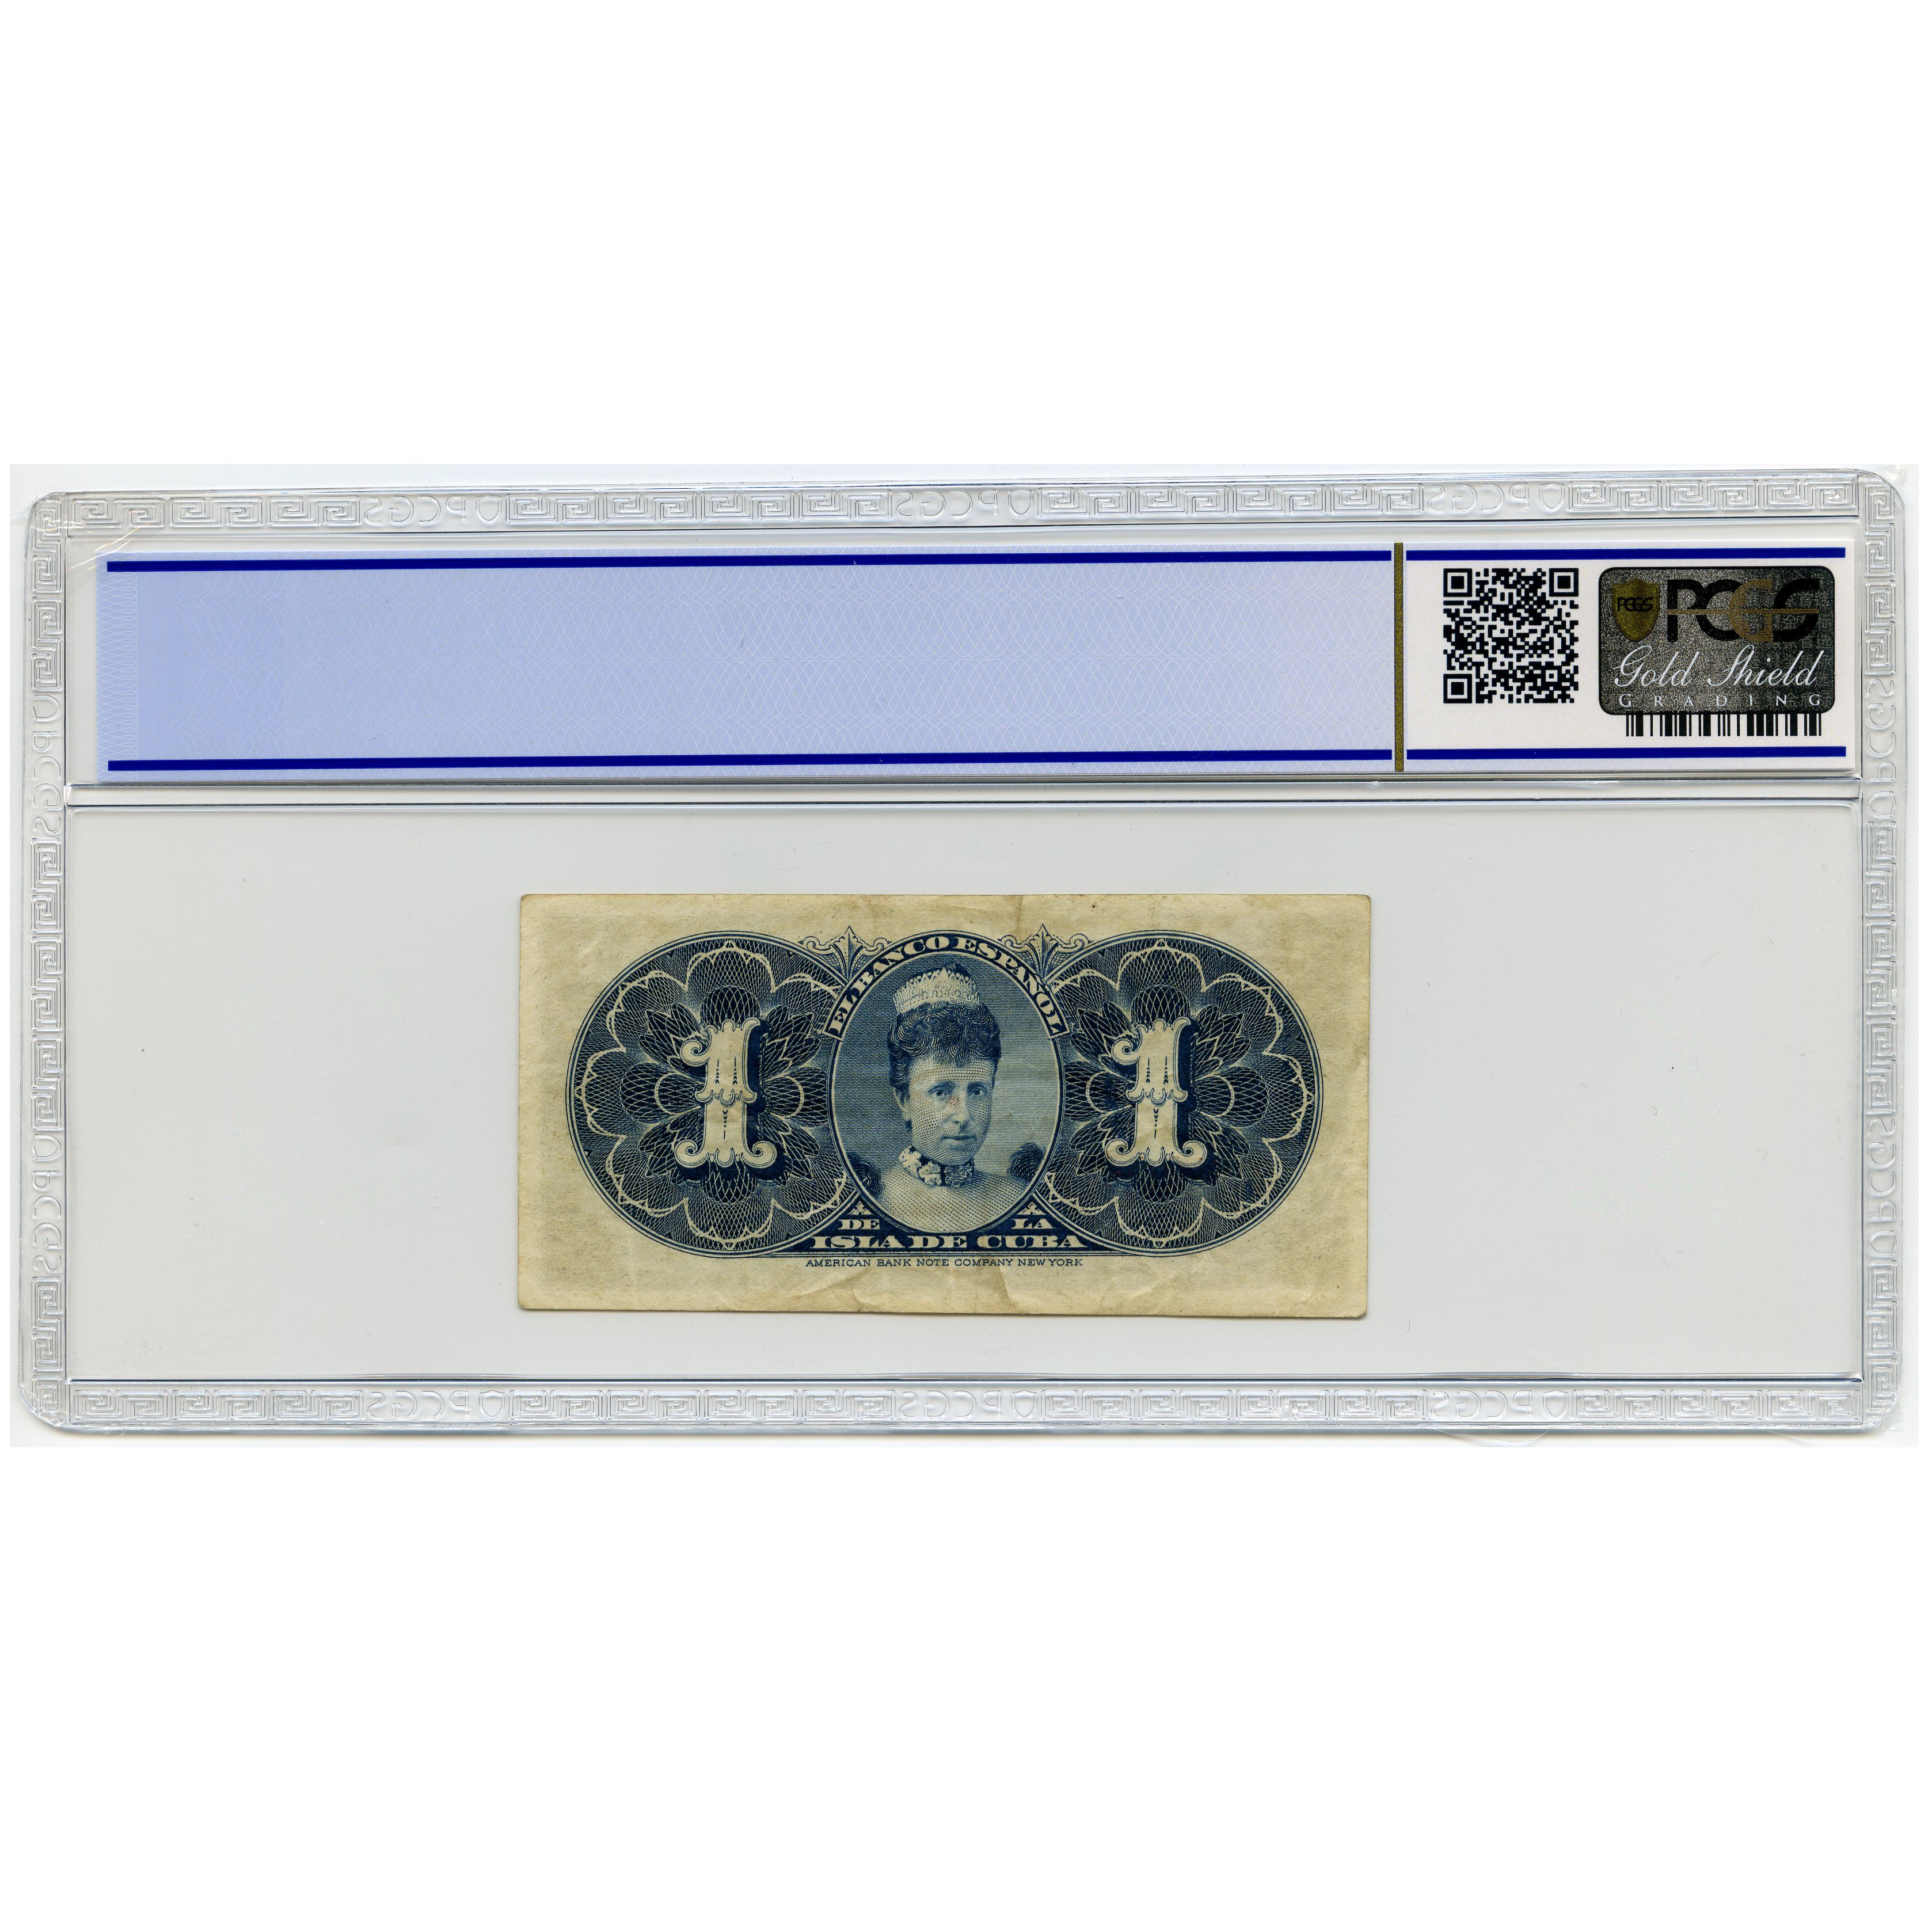 Cuba - 1 Peso - G 0910148 revers